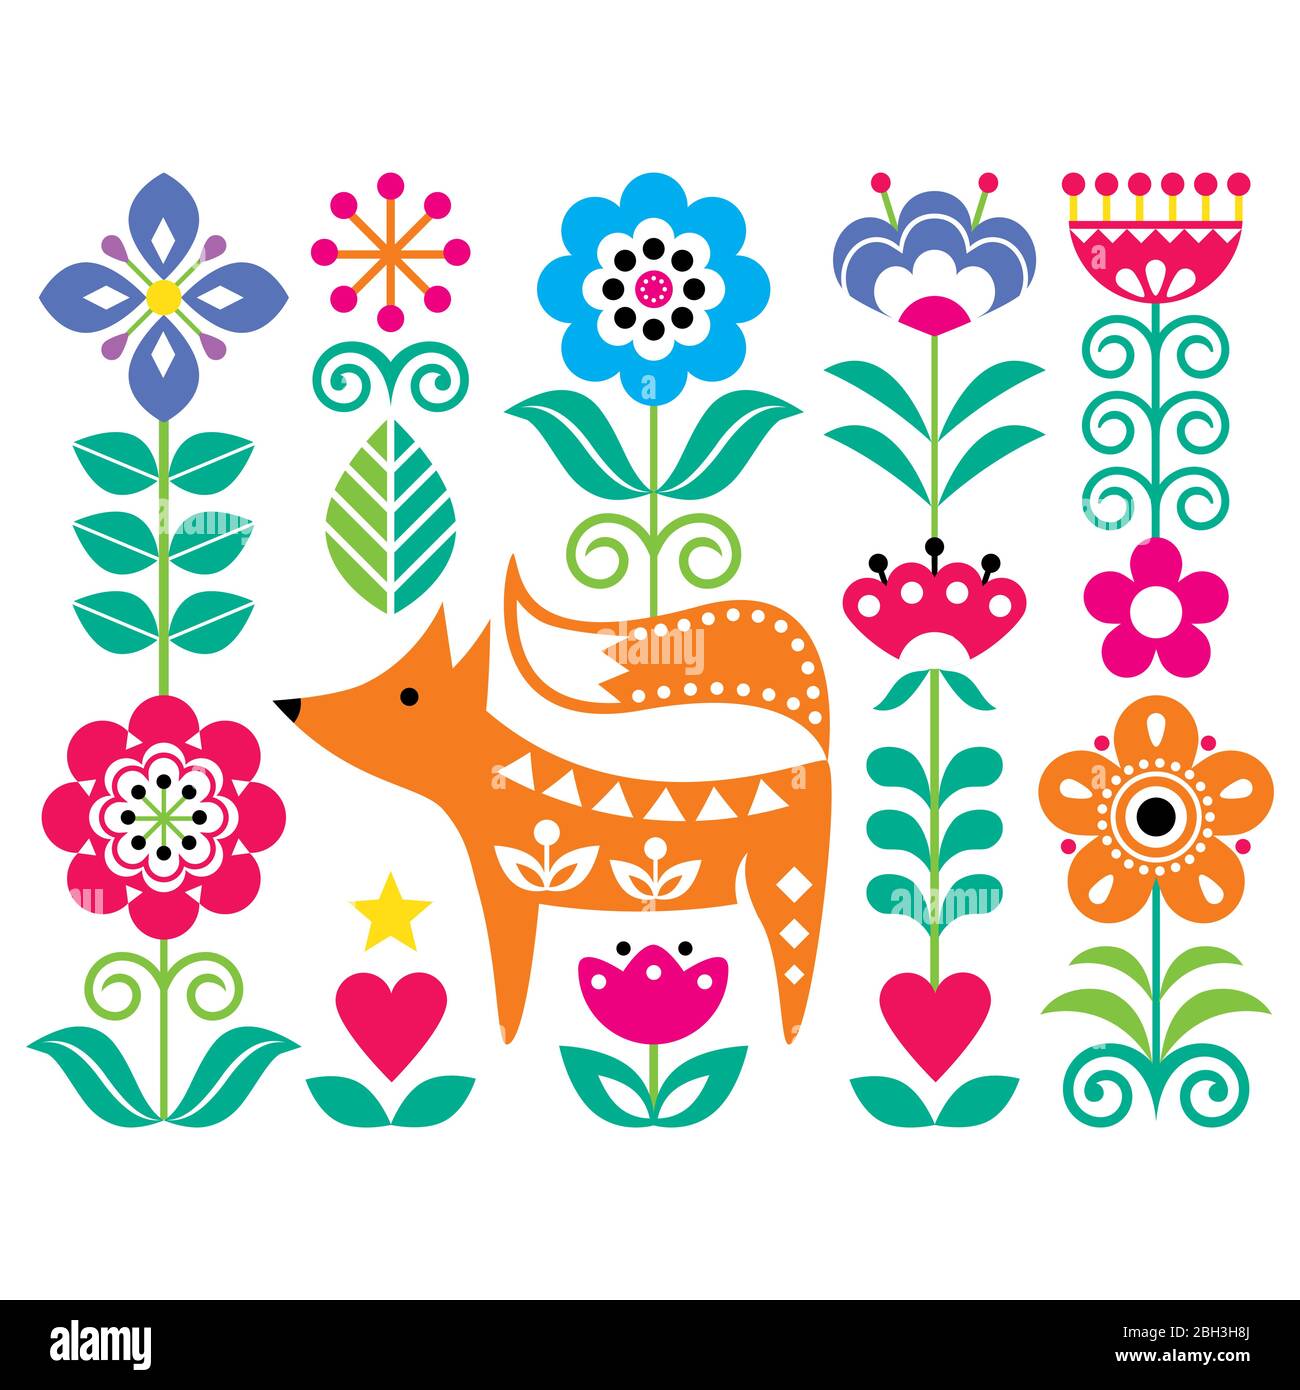 Skandinavische niedliche Volkskunst Vektor-Muster mit Blumen und Fuchs, florale Grußkarte oder Einladung von traditionellen Stickereien aus Schweden inspiriert, NOR Stock Vektor